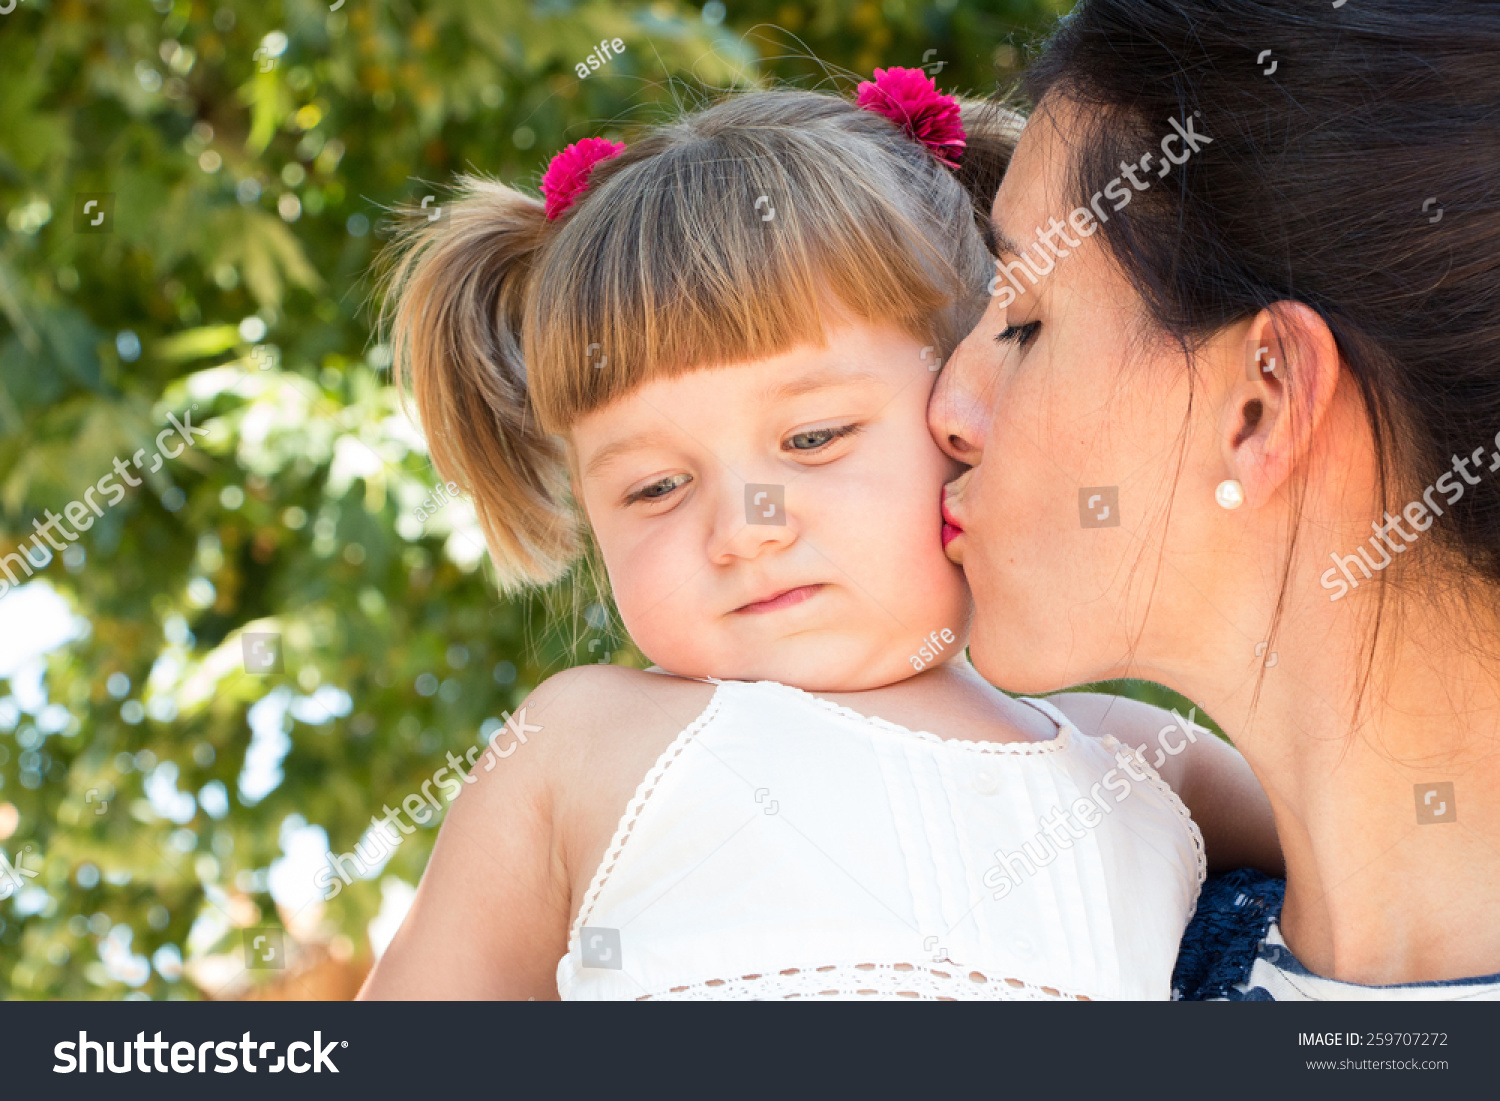 Поцелую маму в этот славный. Детский поцелуй в губы. Мама целует дочь. Поцелуй мамы. Девочка целует маму.